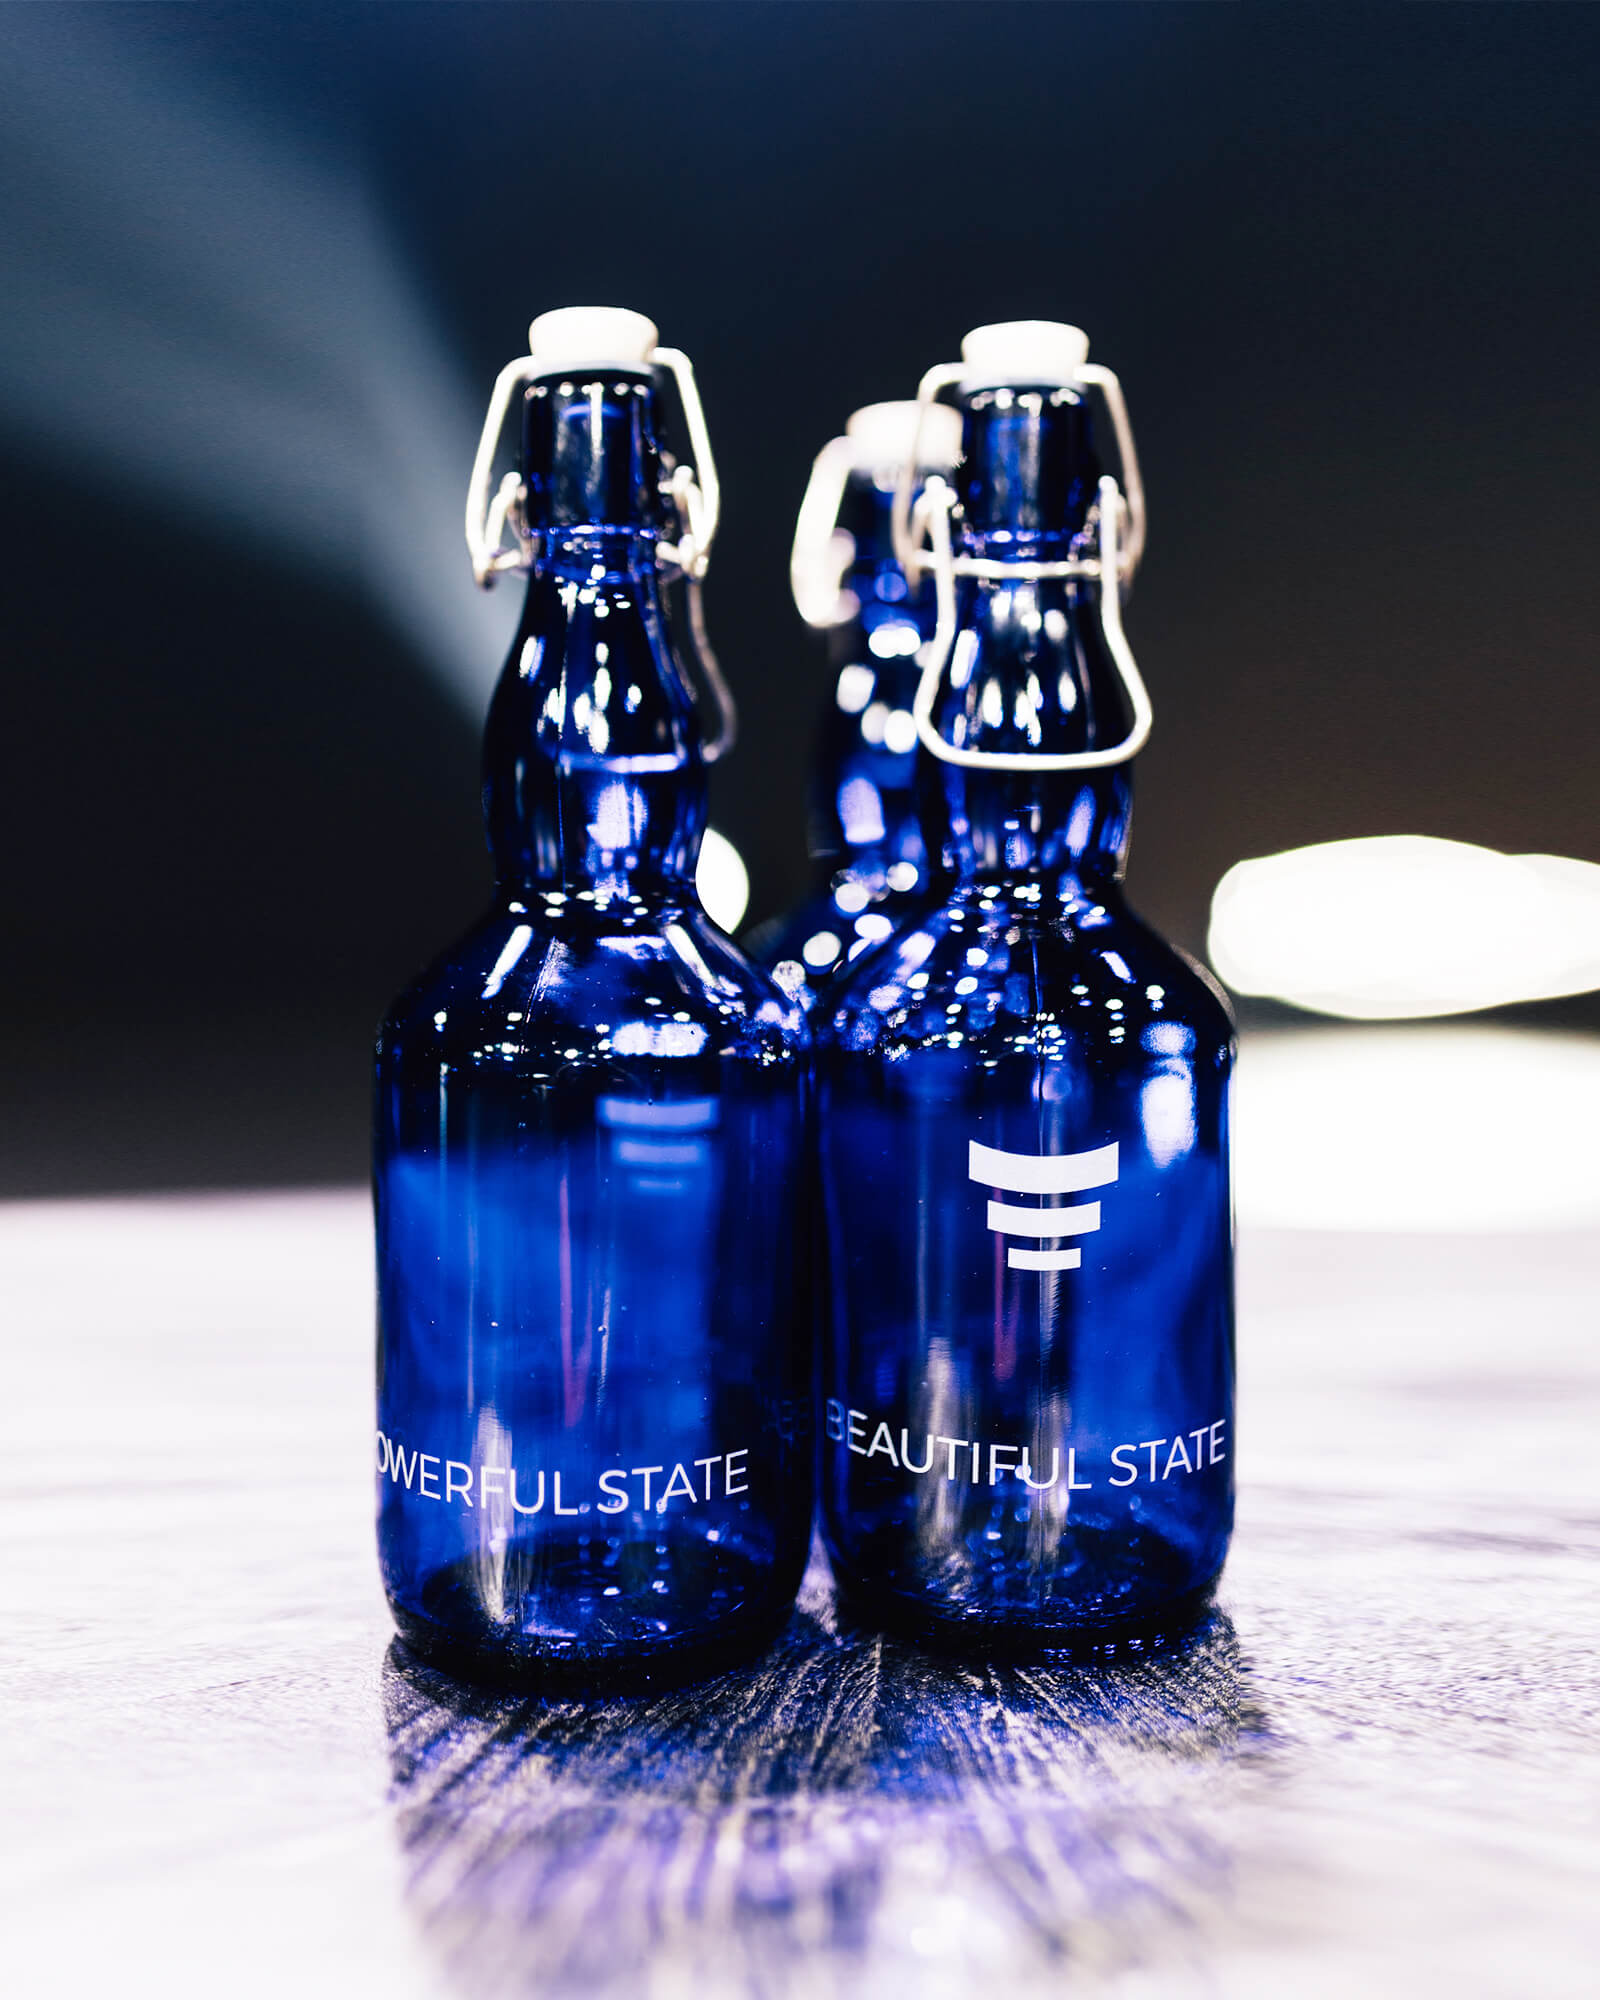 Trinkflasche aus Blauviolett-Glas